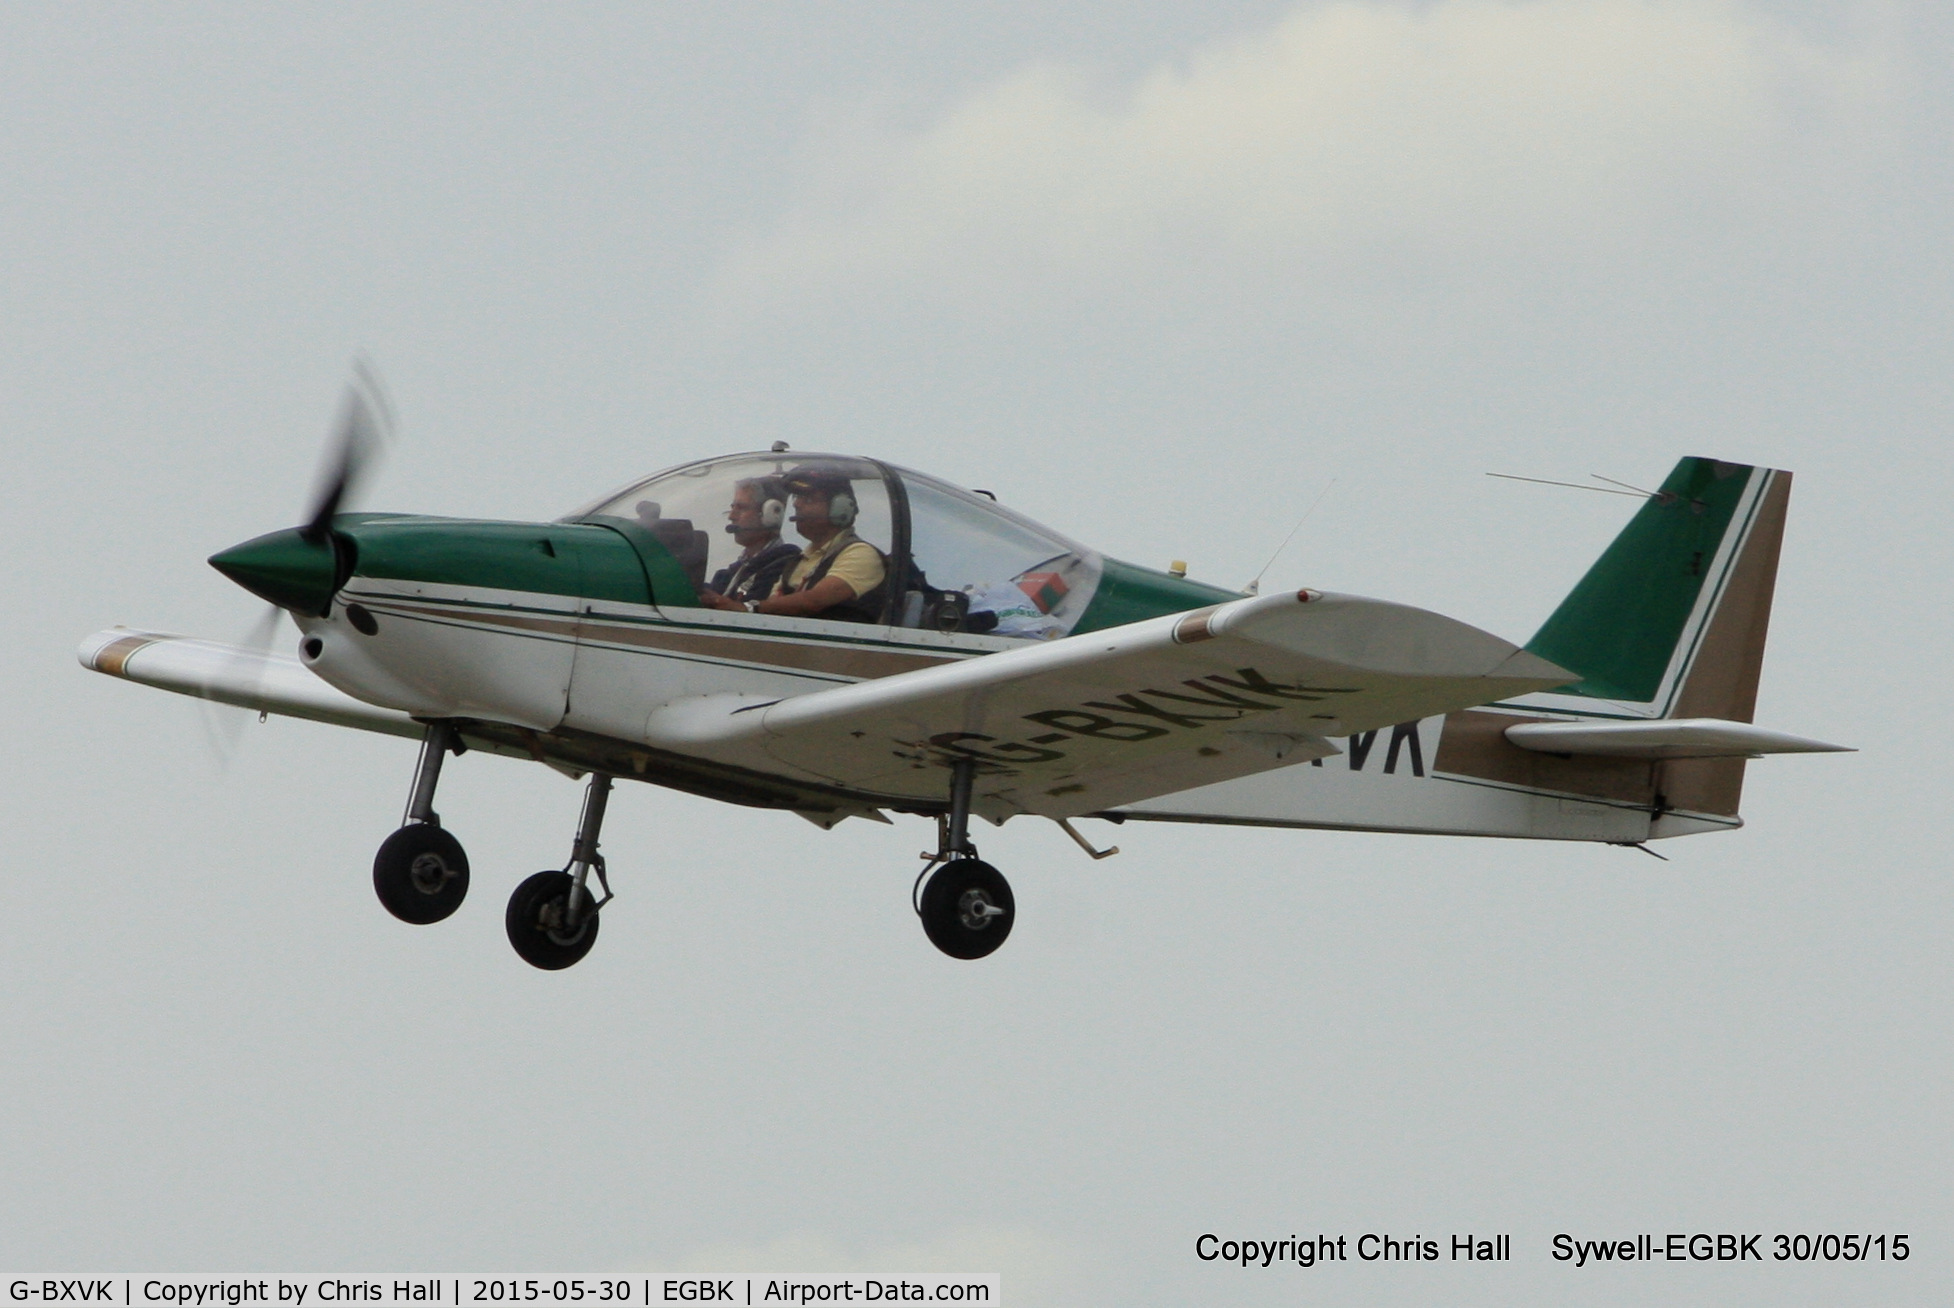 G-BXVK, 1998 Robin HR-200-120B C/N 326, at Aeroexpo 2015